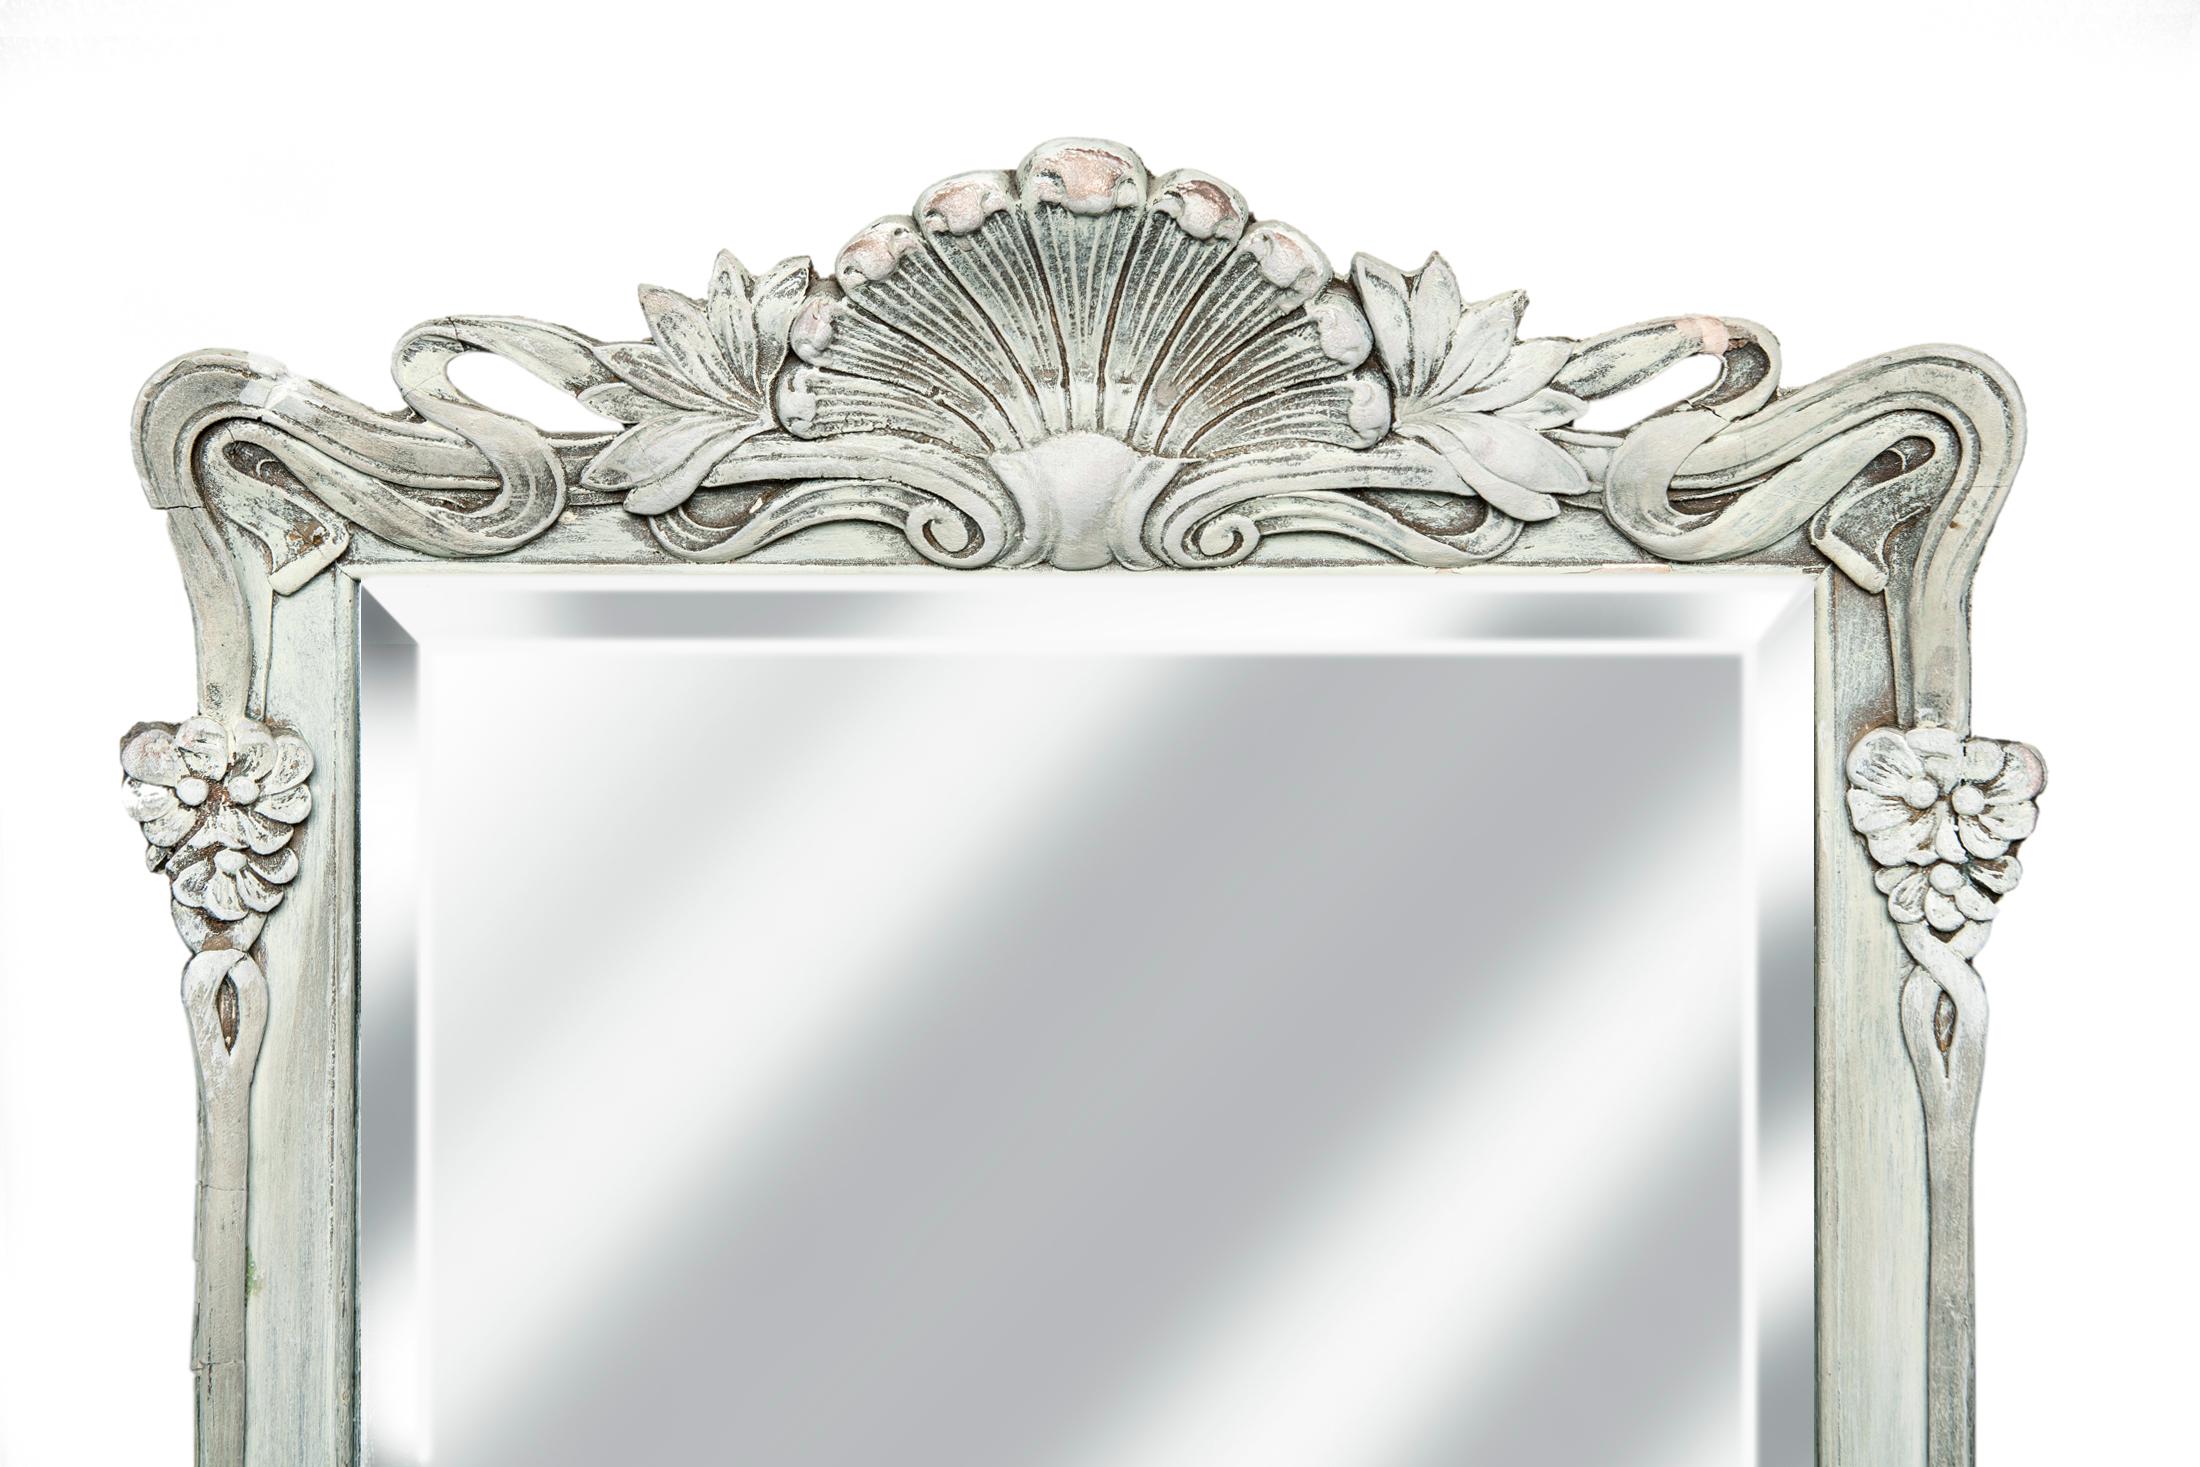 Kunsthandwerklich gefertigter Jugendstilrahmen/ fein abgeschrägter Spiegel. Langgestrecktes Rechteck
ältere abgeschrägte Spiegel. Verdrahtet zum Aufhängen mit dem Wappen an der Ober- oder Unterseite.